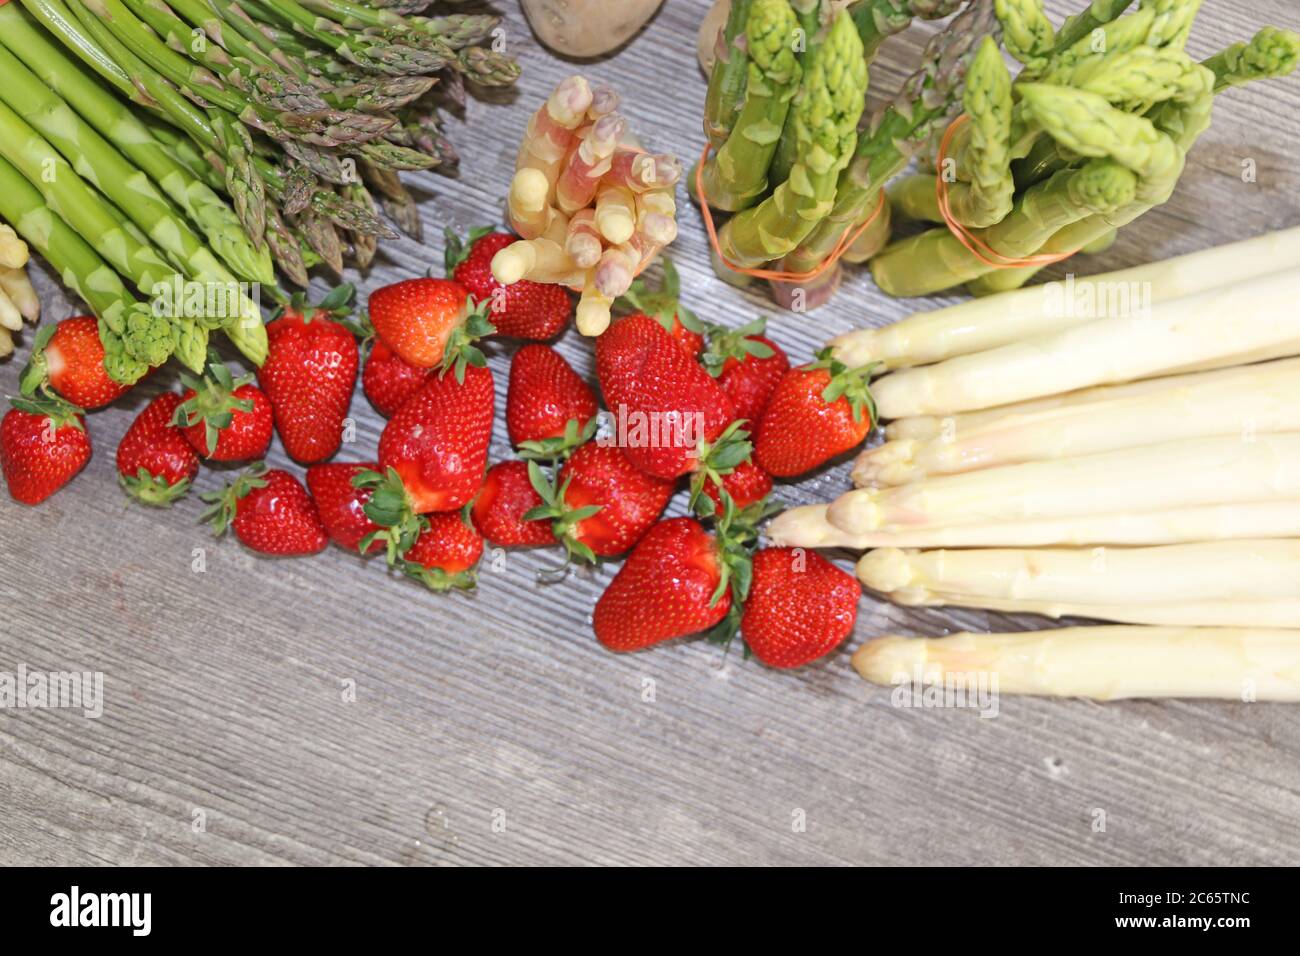 Grüne Spargel, Weiße Spargel und Frische Erdbeeren dekoriert auf einem rustikalen Holztisch Banque D'Images